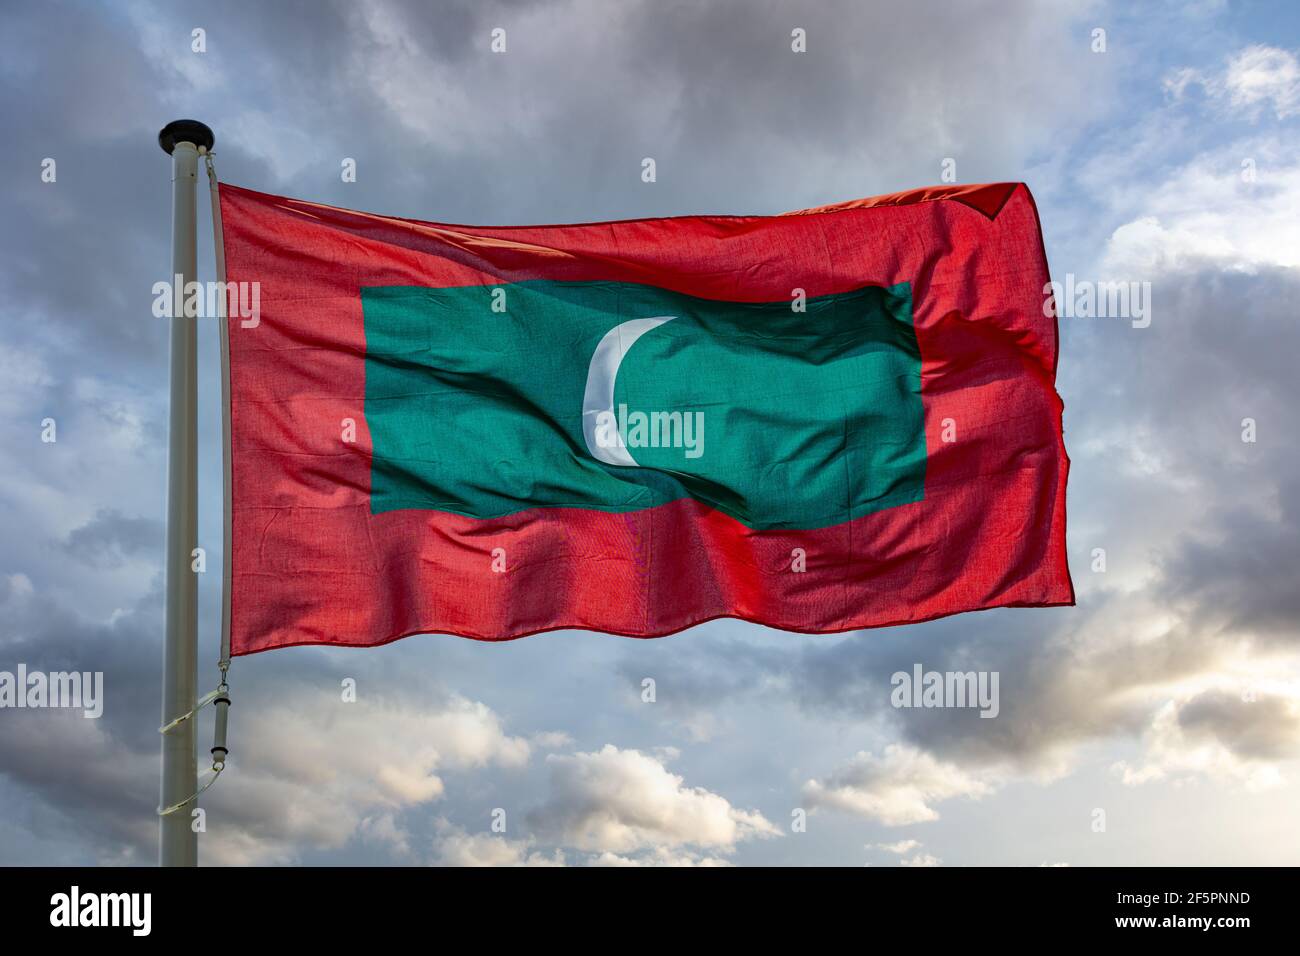 Symbole Maldives. Drapeau national de la République des Maldives sur un poteau agitant contre fond ciel nuageux. Banque D'Images